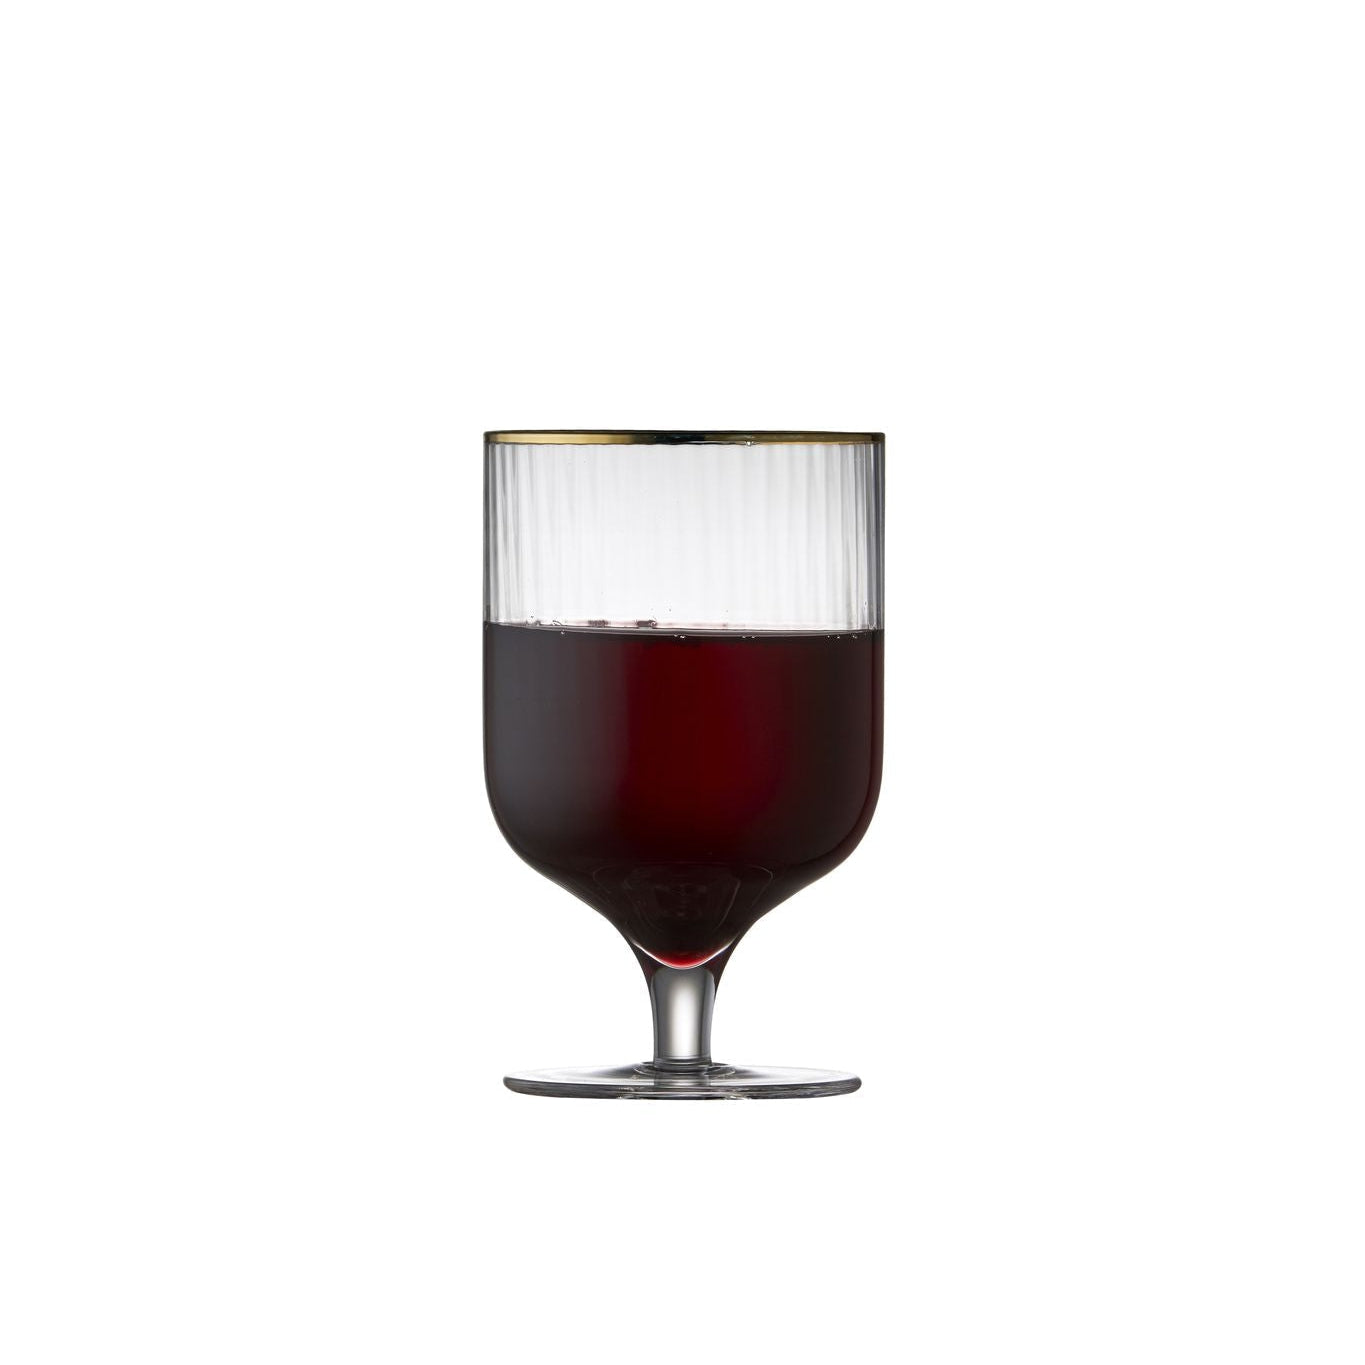 Lyngby Glas Verre à vin de Palermo Gold 30 CL, 4 PCS.